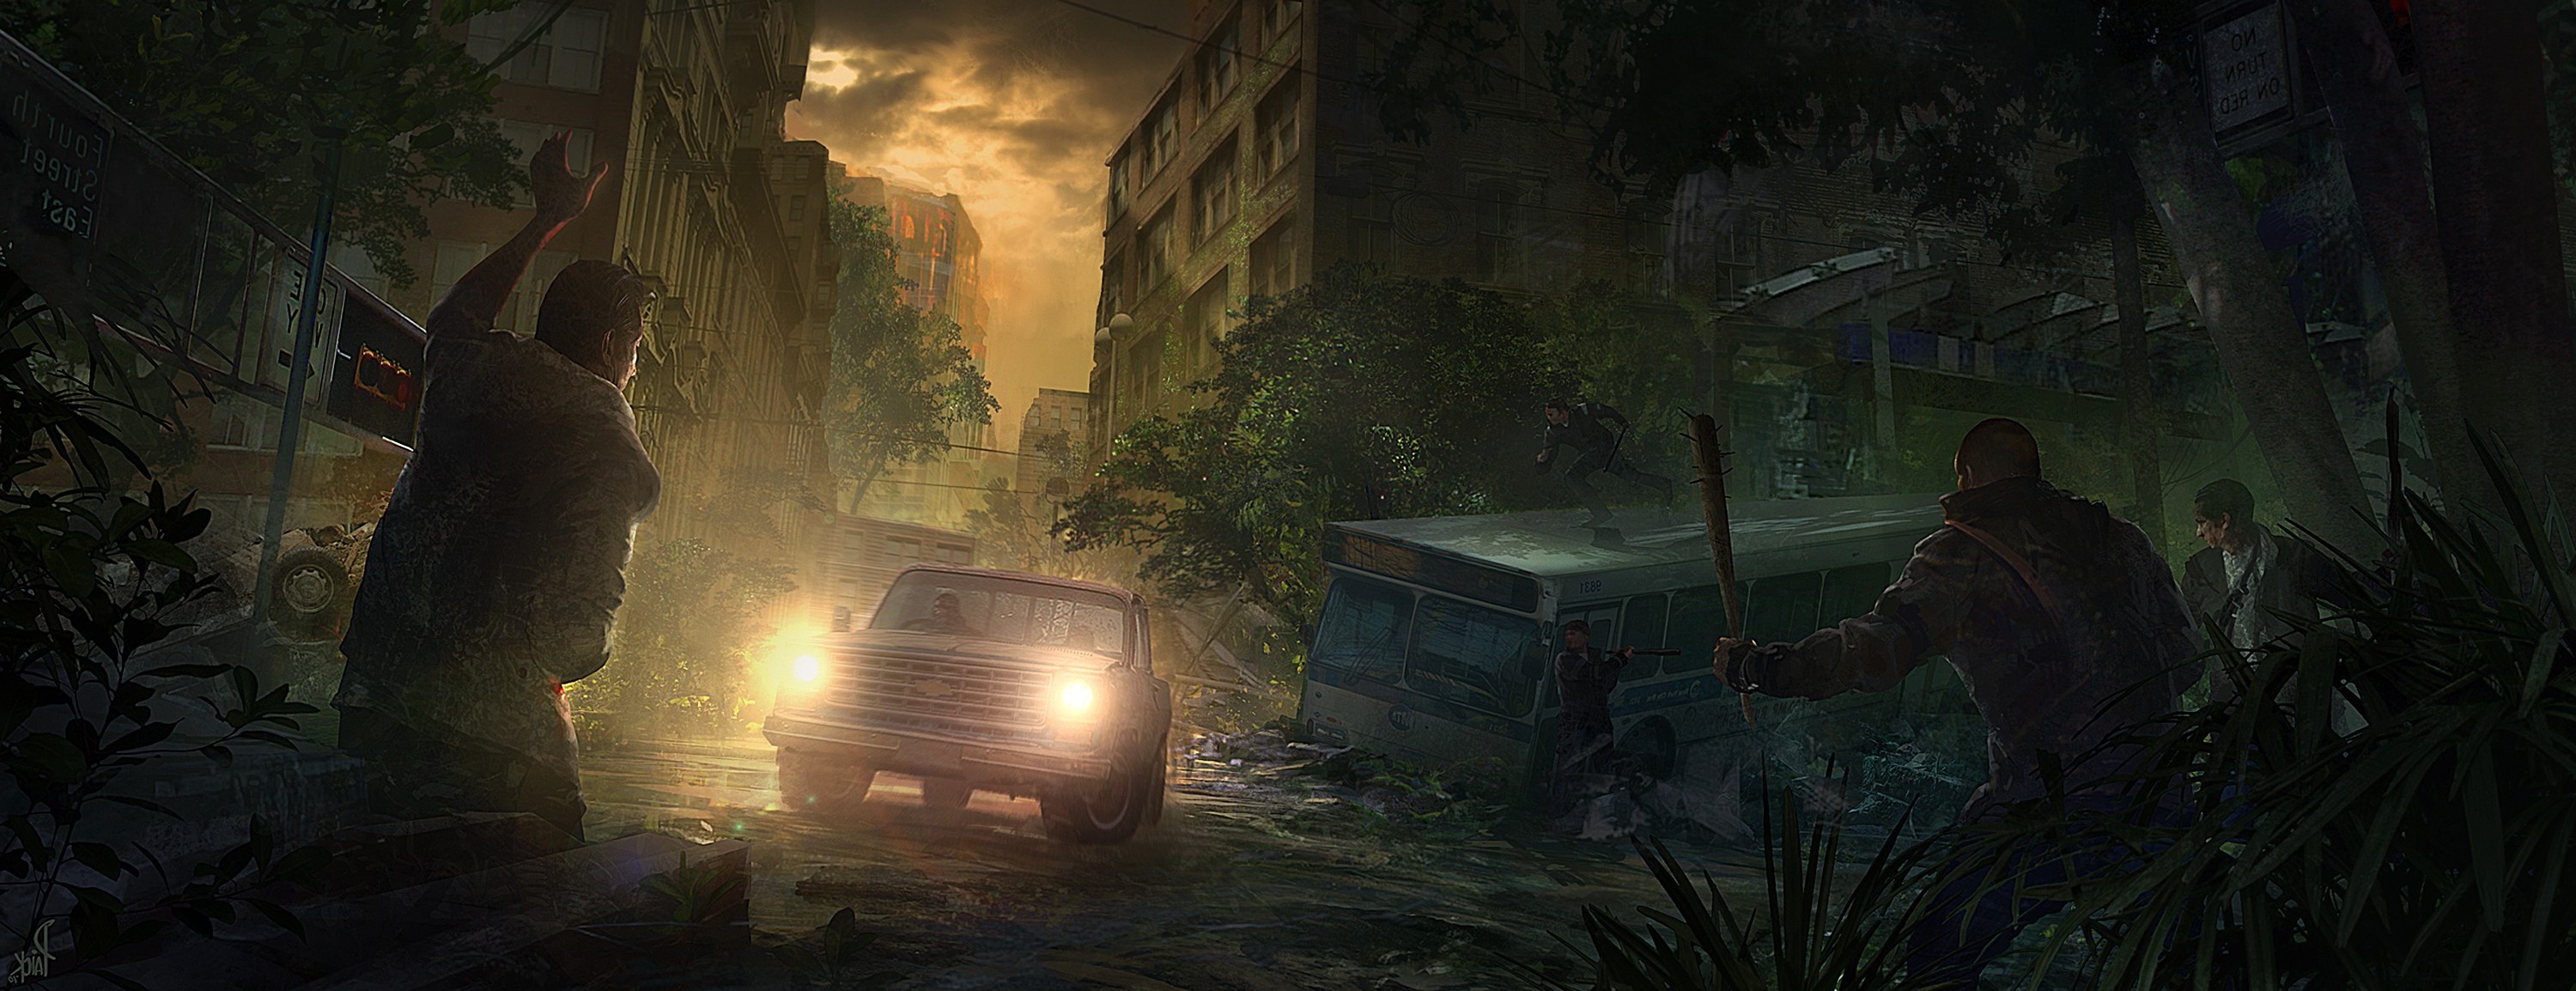 The Last Of Us, Concept Art, Video Games, Digital 2D, Artwork Wallpaper